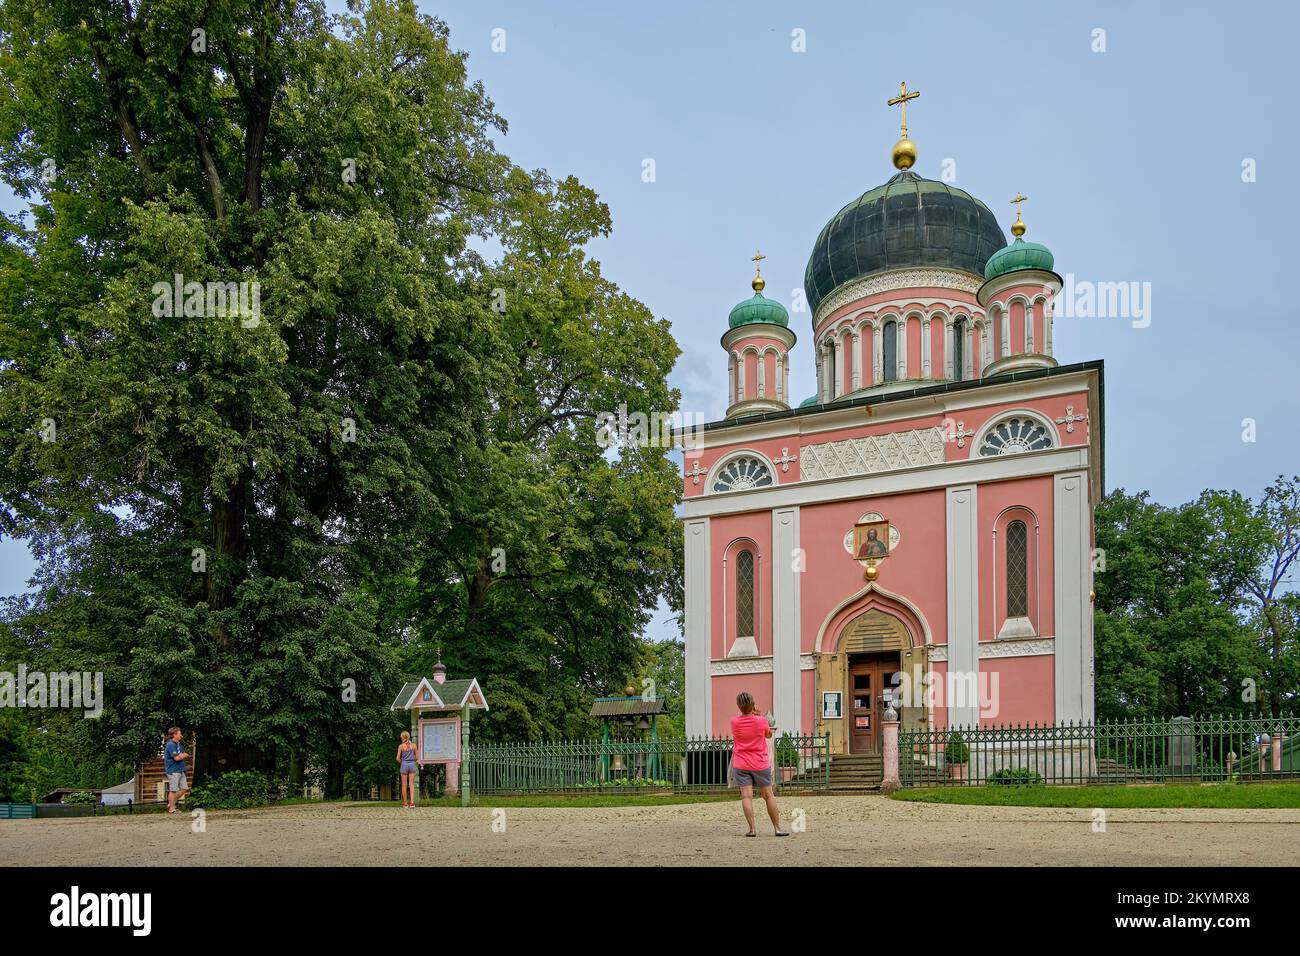 Blick auf die russisch-orthodoxe Kirche, Alexander-Nevsky-Gedächtniskirche, auf dem Kapellenberg in Potsdam, Brandenburg, Deutschland. Stockfoto